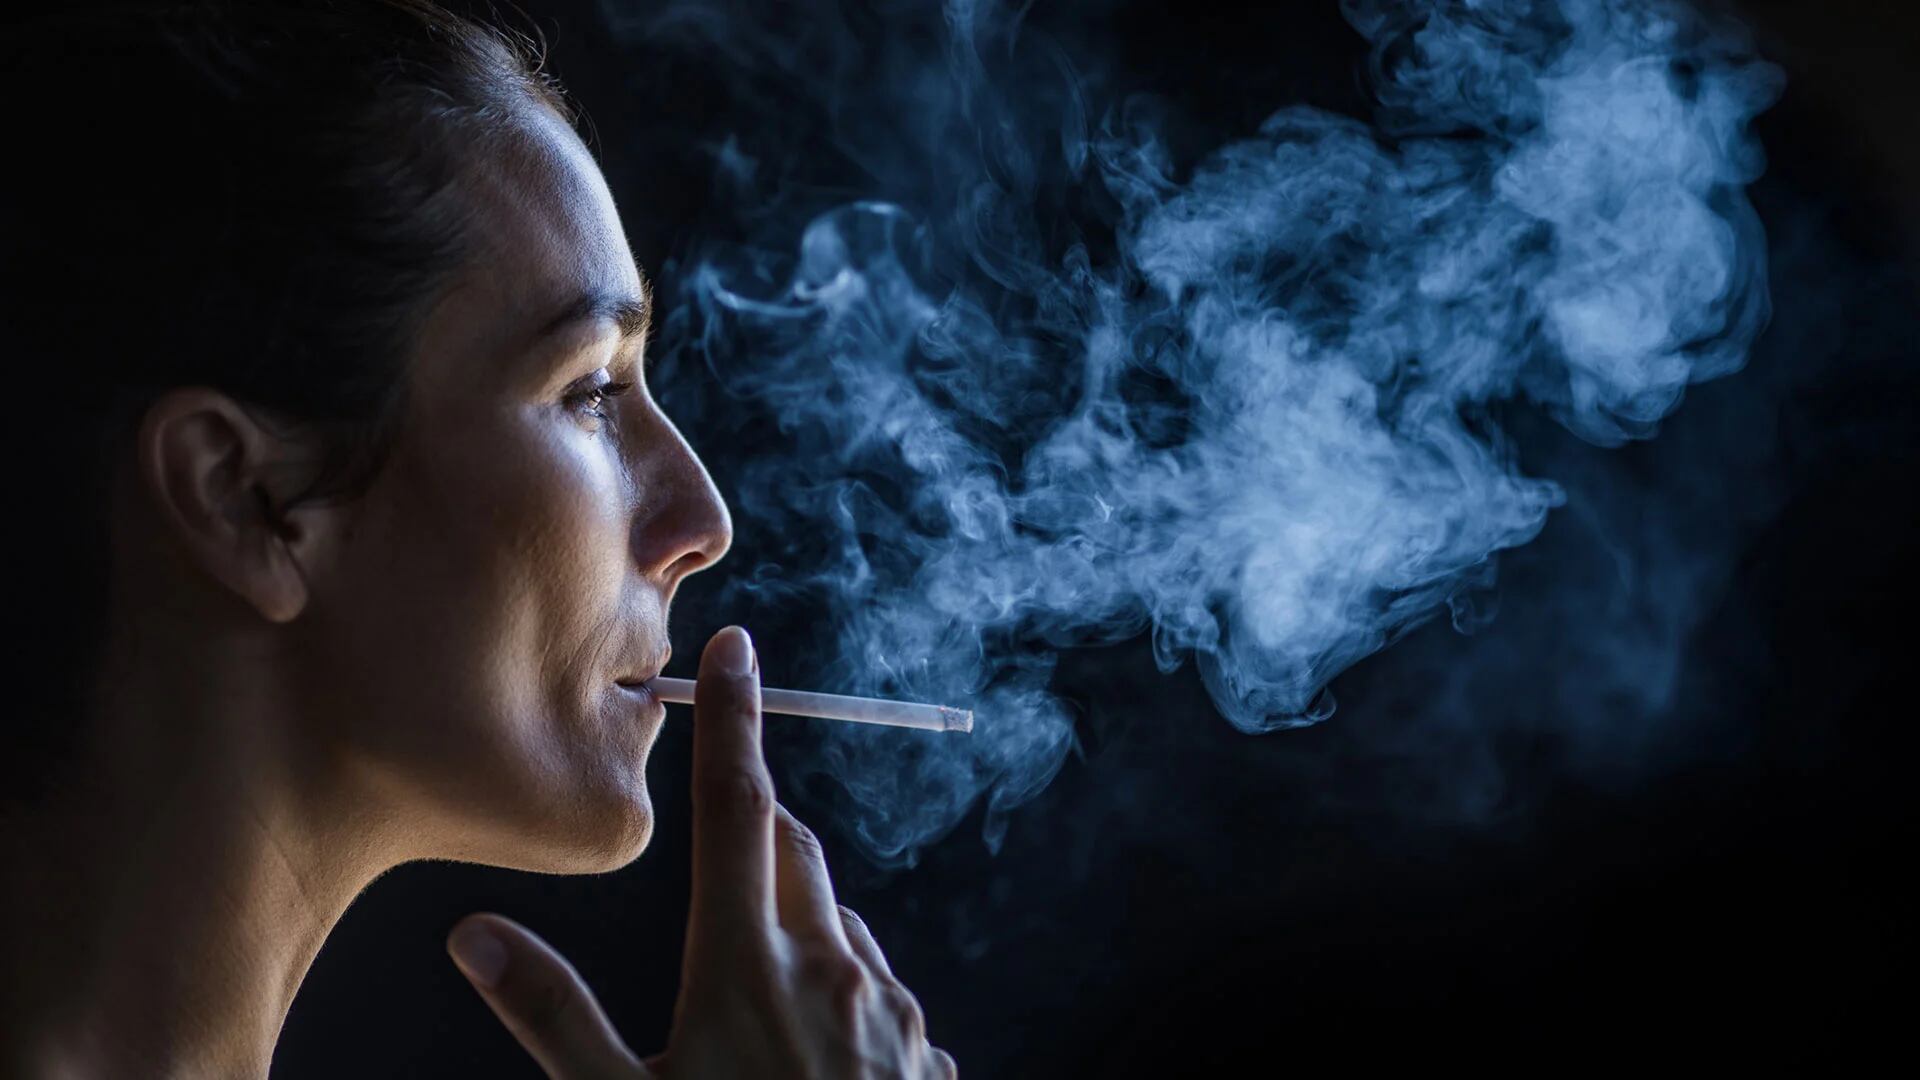 Las personas que fuman un paquete, o más, de cigarrillos al día tienen el doble de probabilidades de desarrollar cáncer de vejiga que quienes fuman menos de medio paquete al día (Getty)